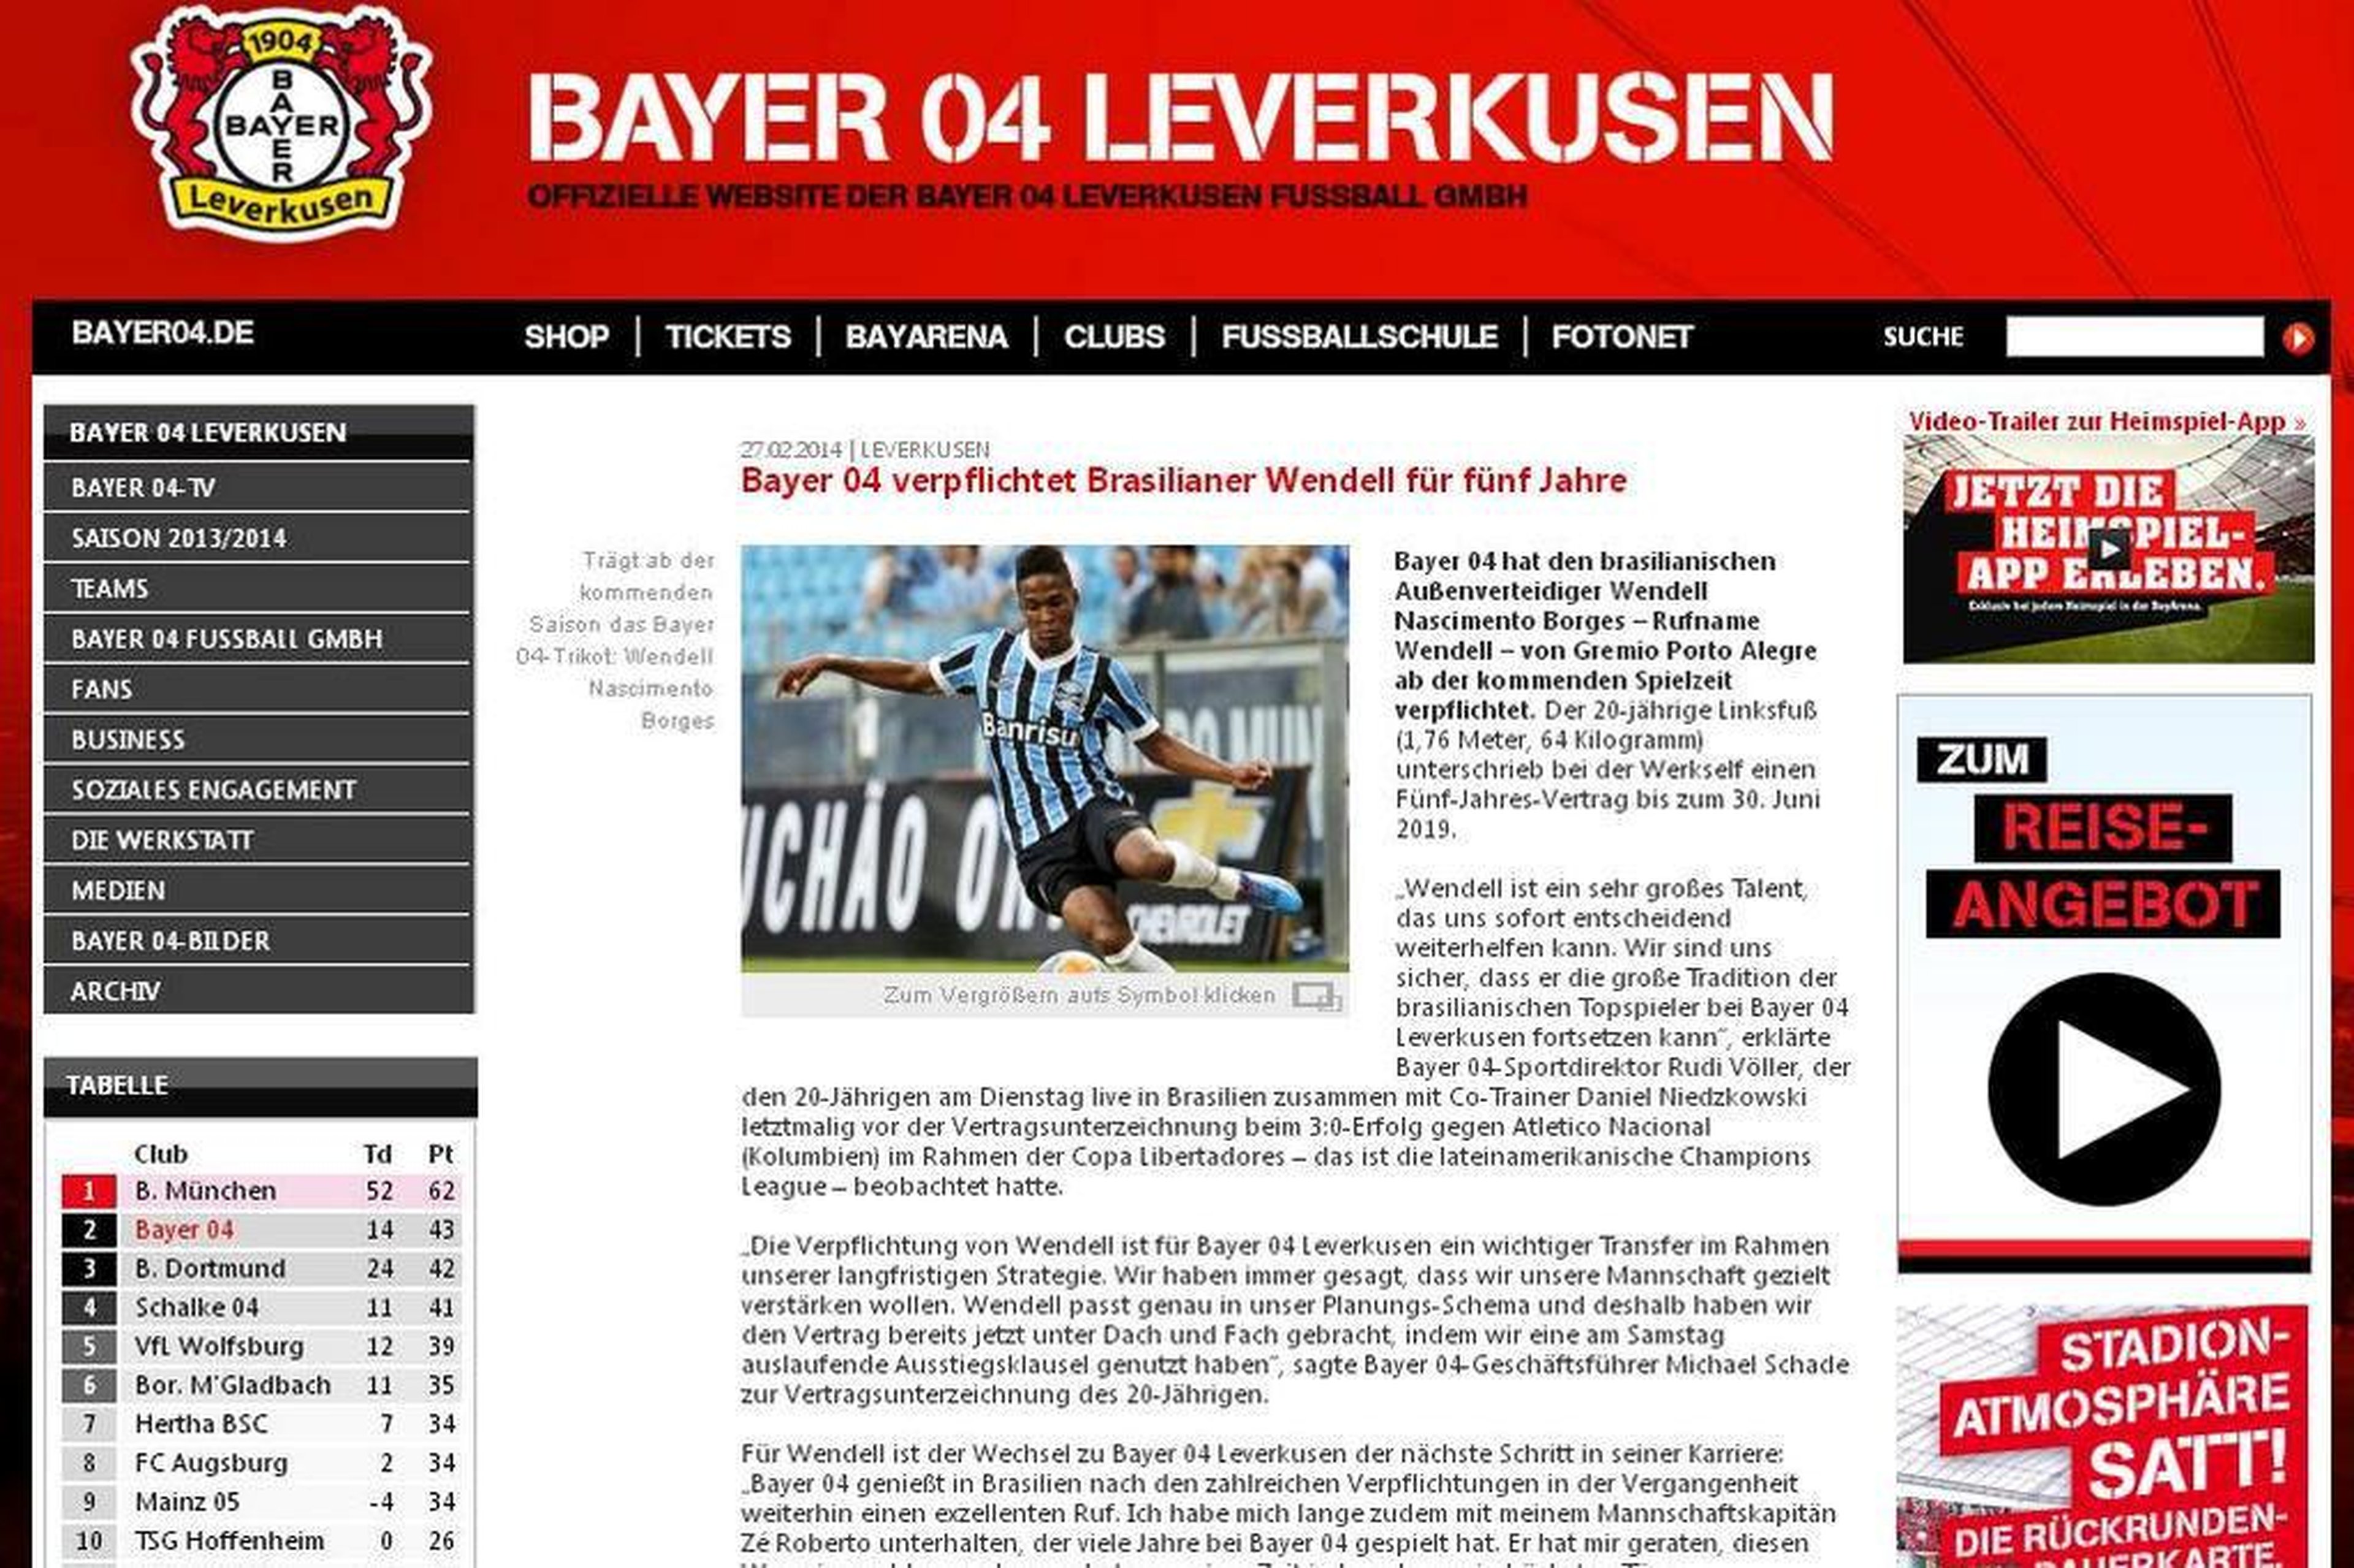 Reprodução/Bayer Leverkusen